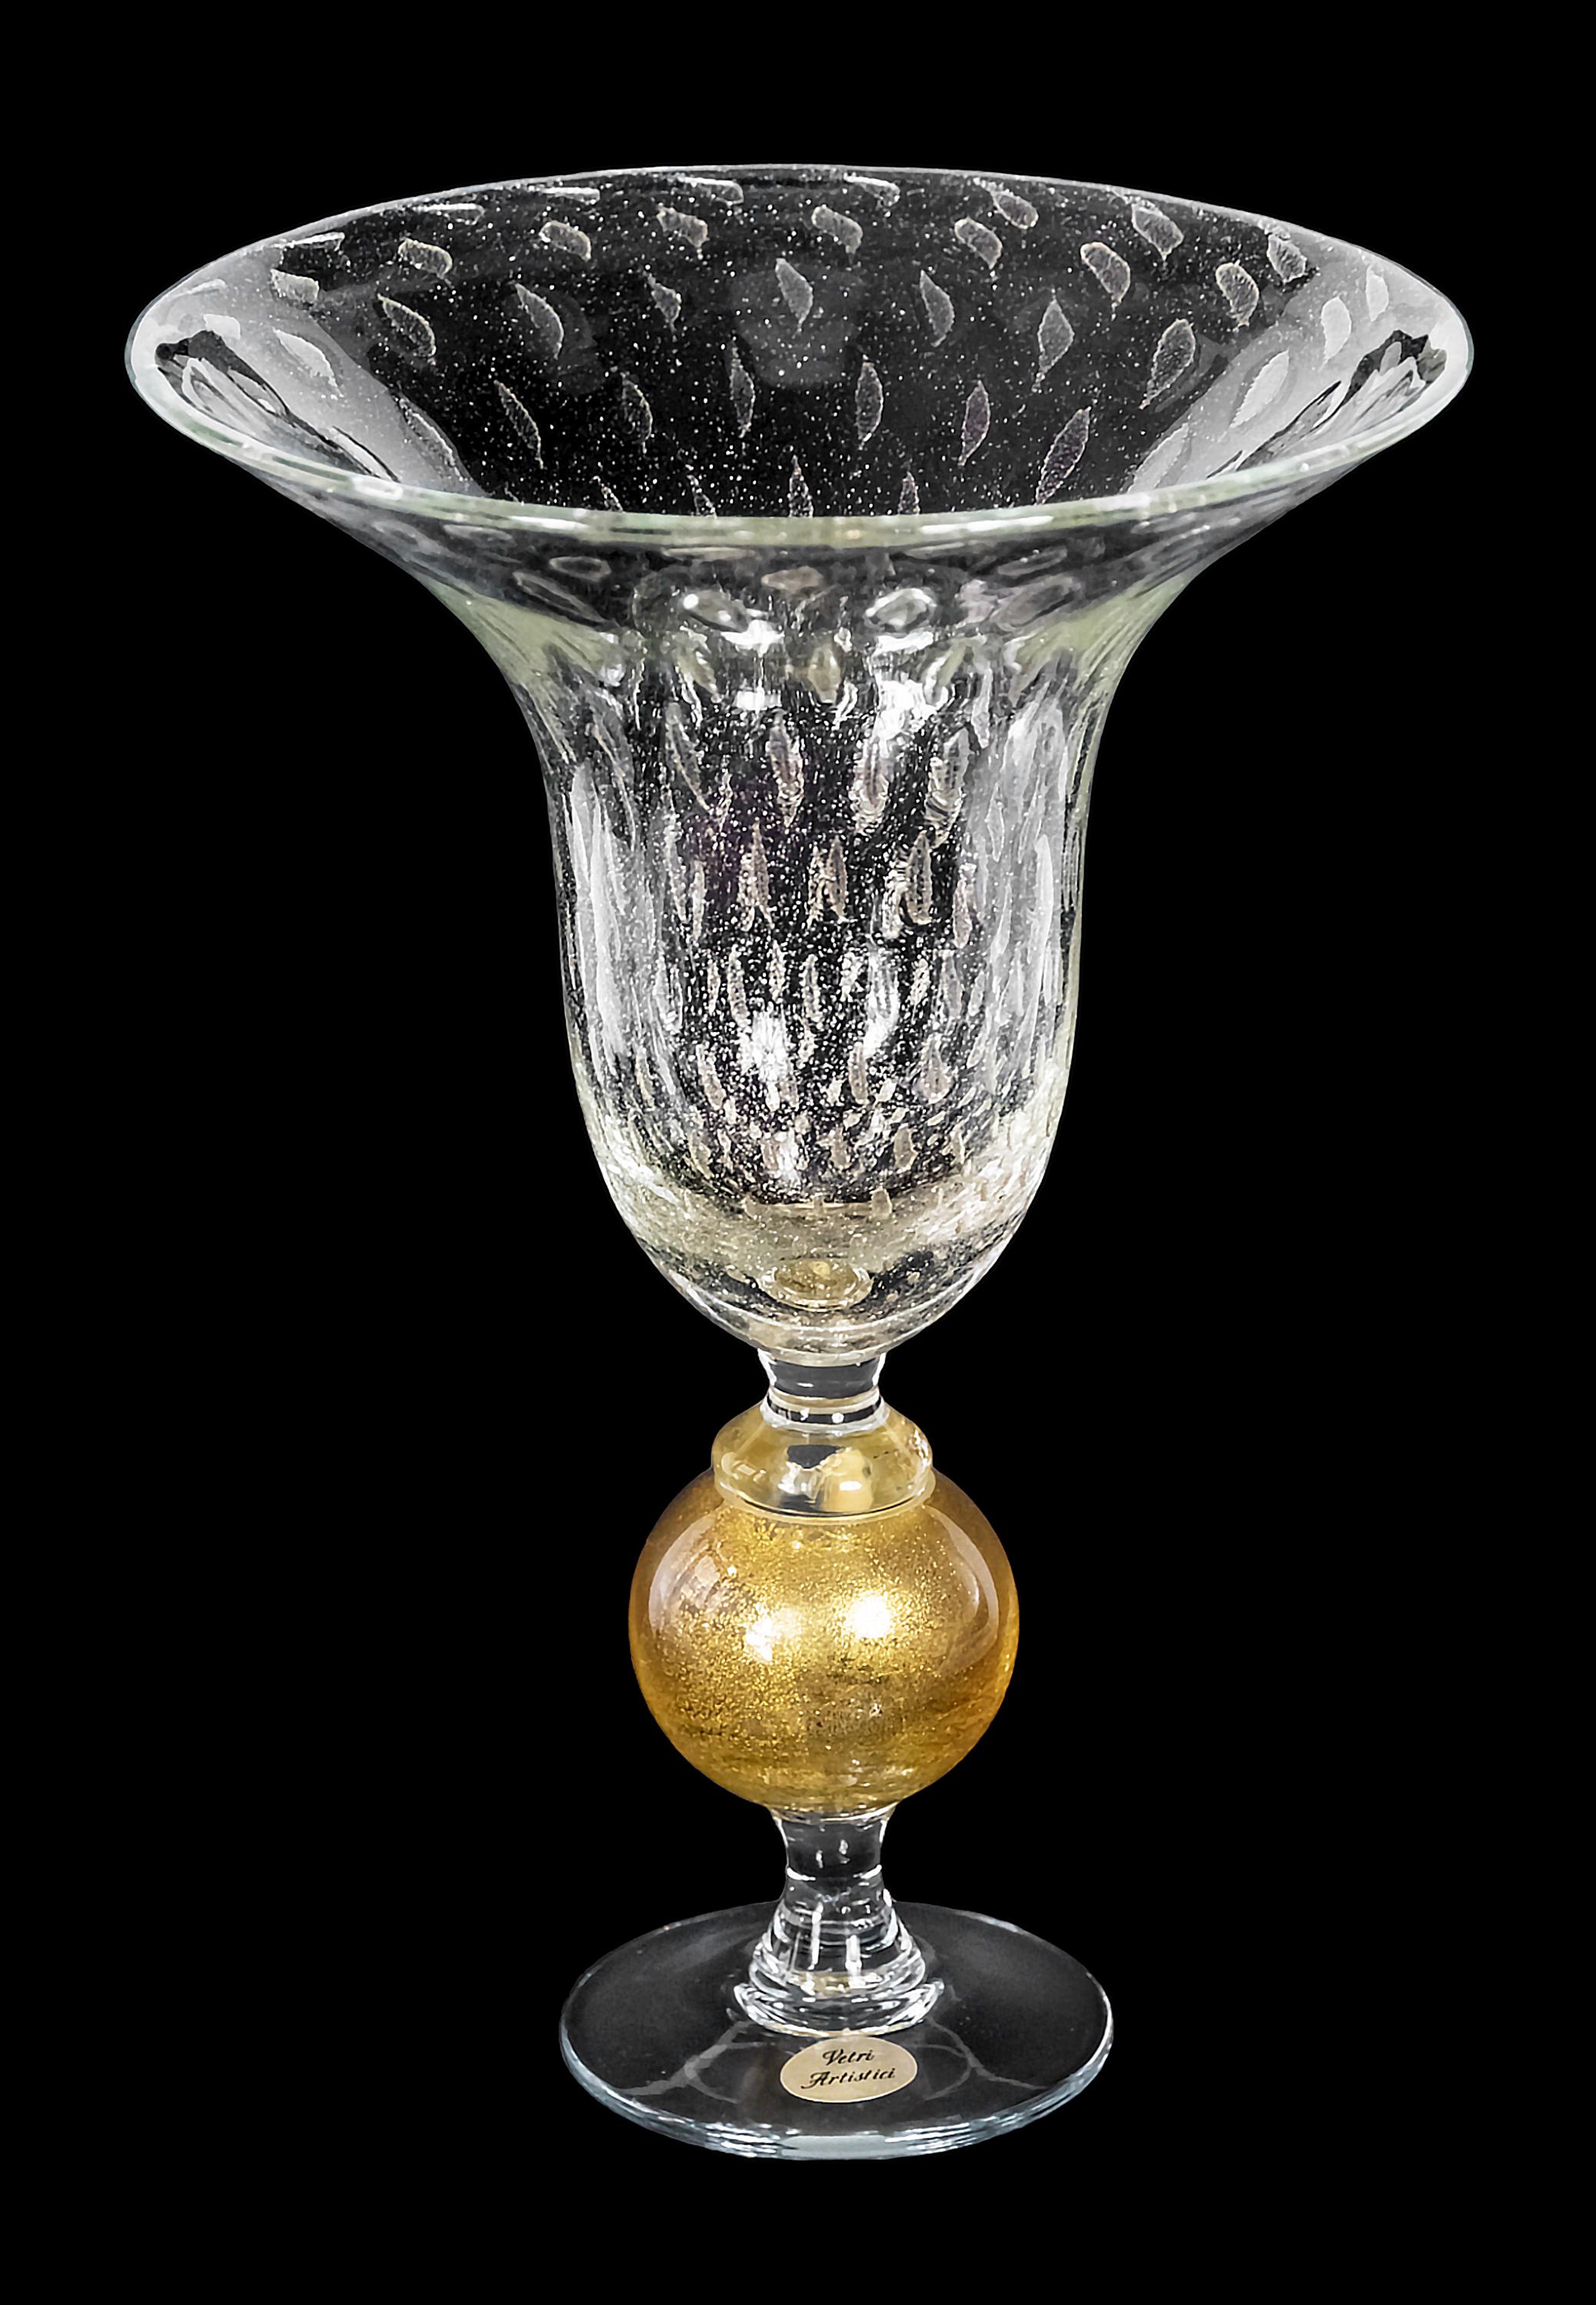 Vase en verre de Murano fabriqué à la main en Italie, créé par le maître verrier Marino Santi et signé en gravure sur la base. 
Verre Murano avec des bulles d'air à l'intérieur et de la poussière d'or incrustée. 
La base est en verre transparent